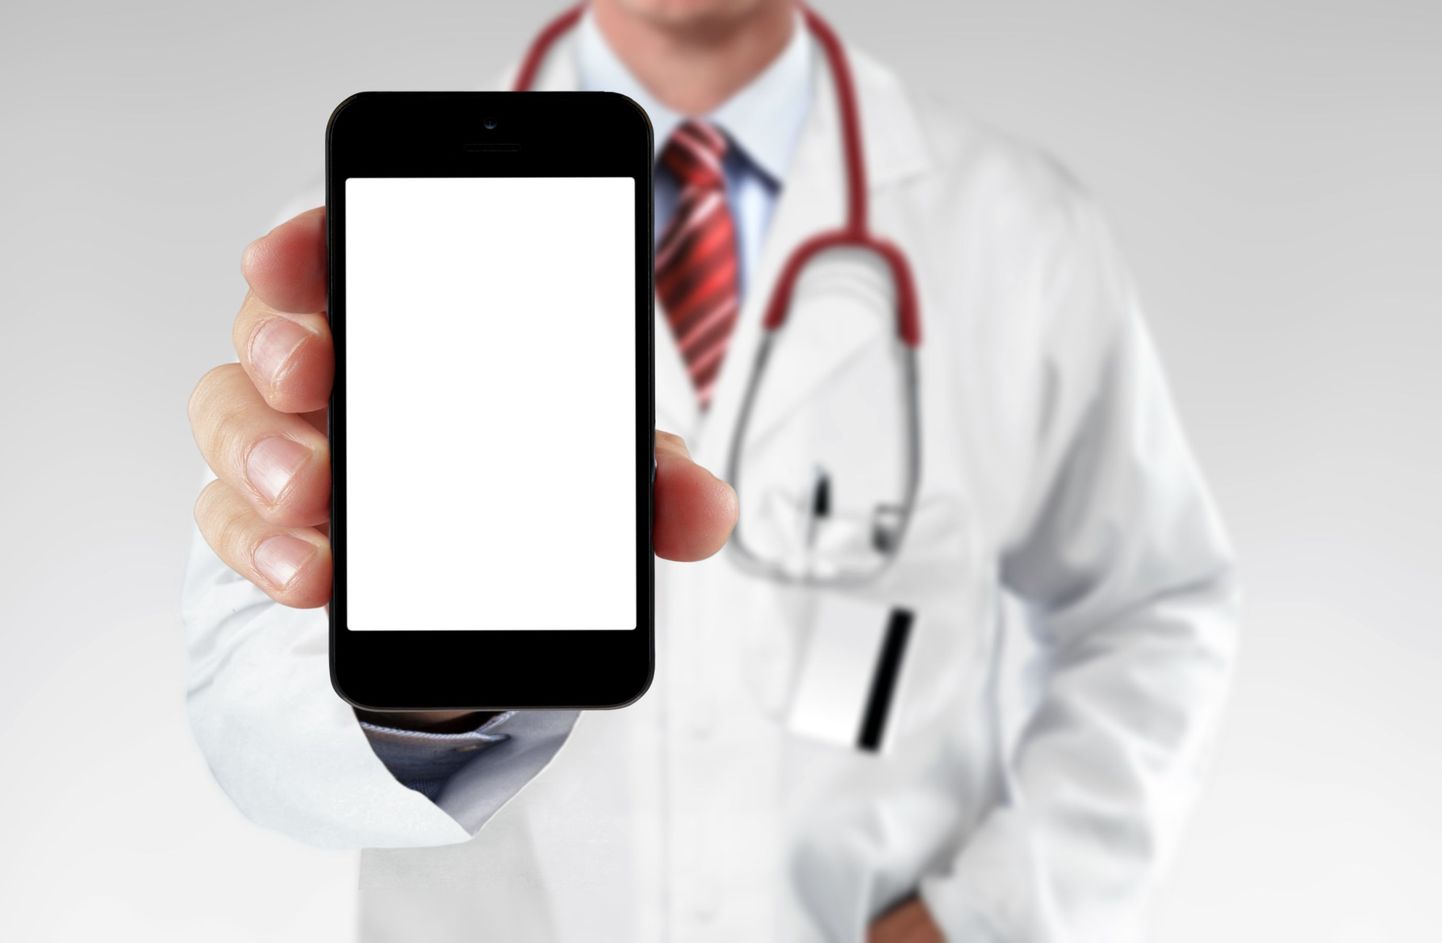 USAs teeb üha enam patsiente arstidele e-visiite.